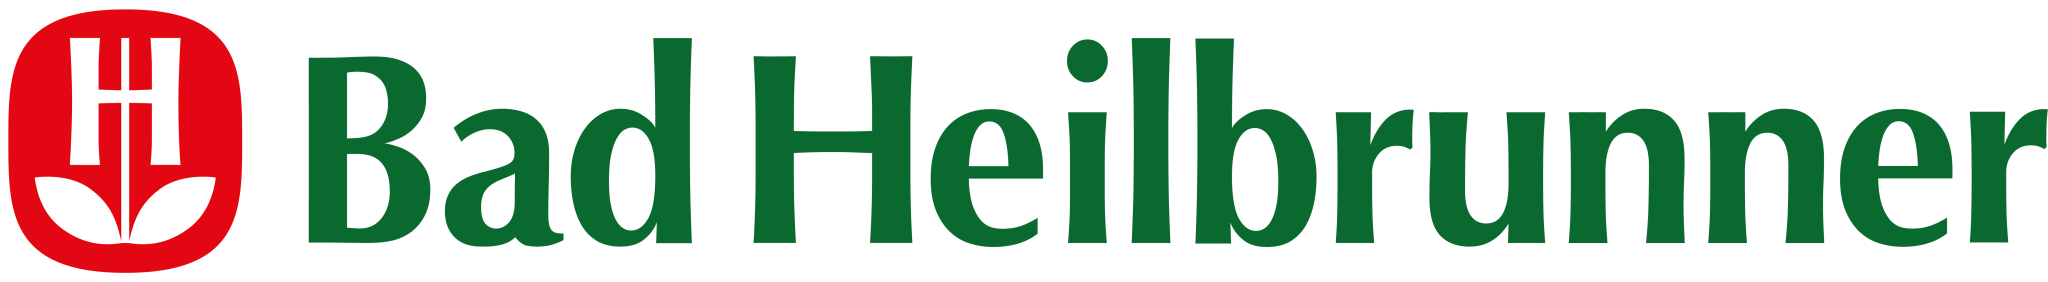 Bad Heilbrunner Logo